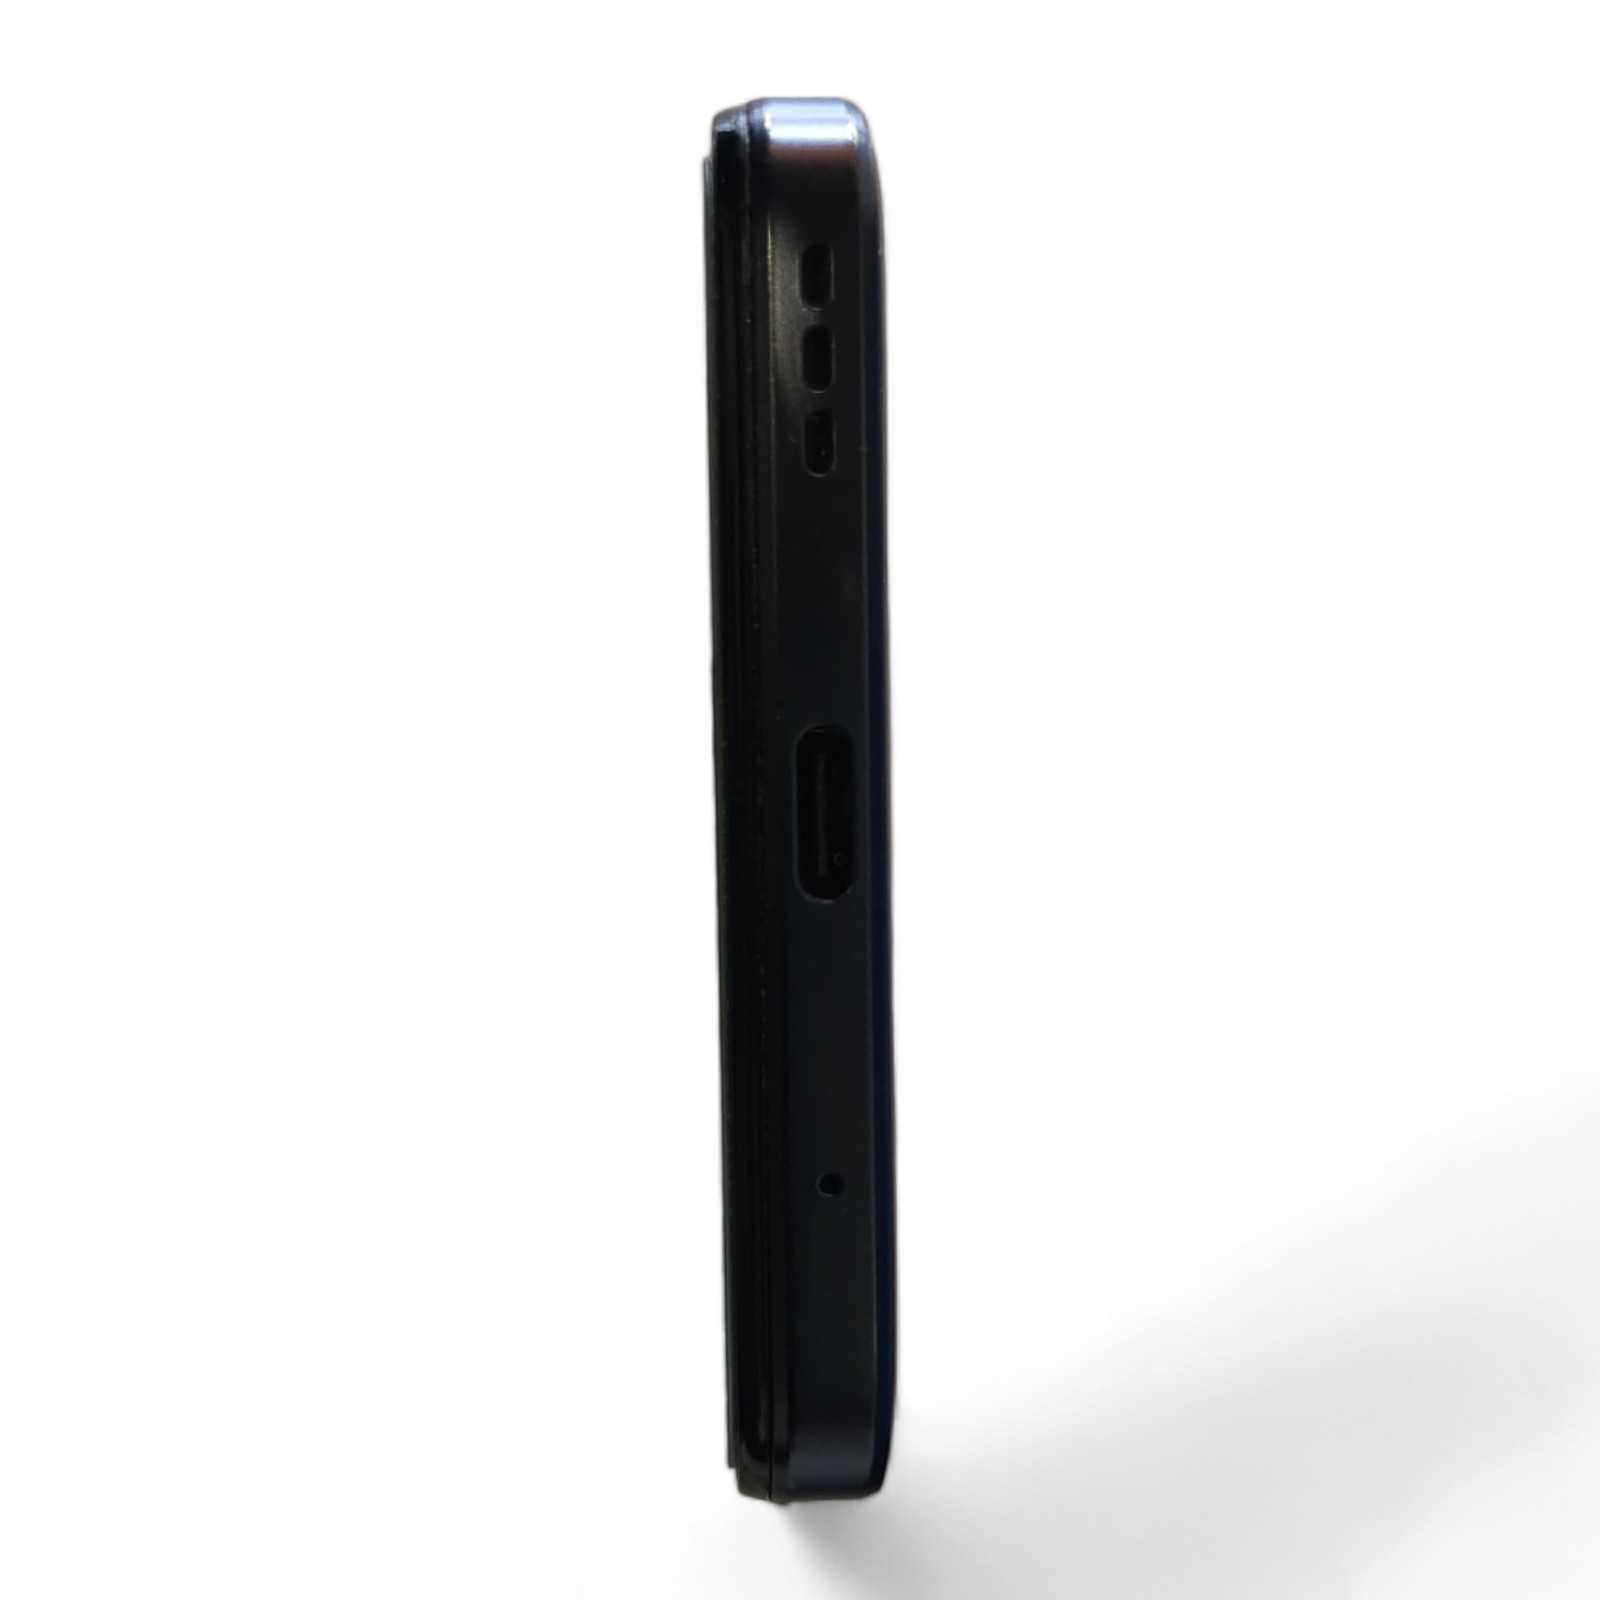 Smartfon Motorola Moto E13 2 GB / 64 GB 4G (LTE) czarny